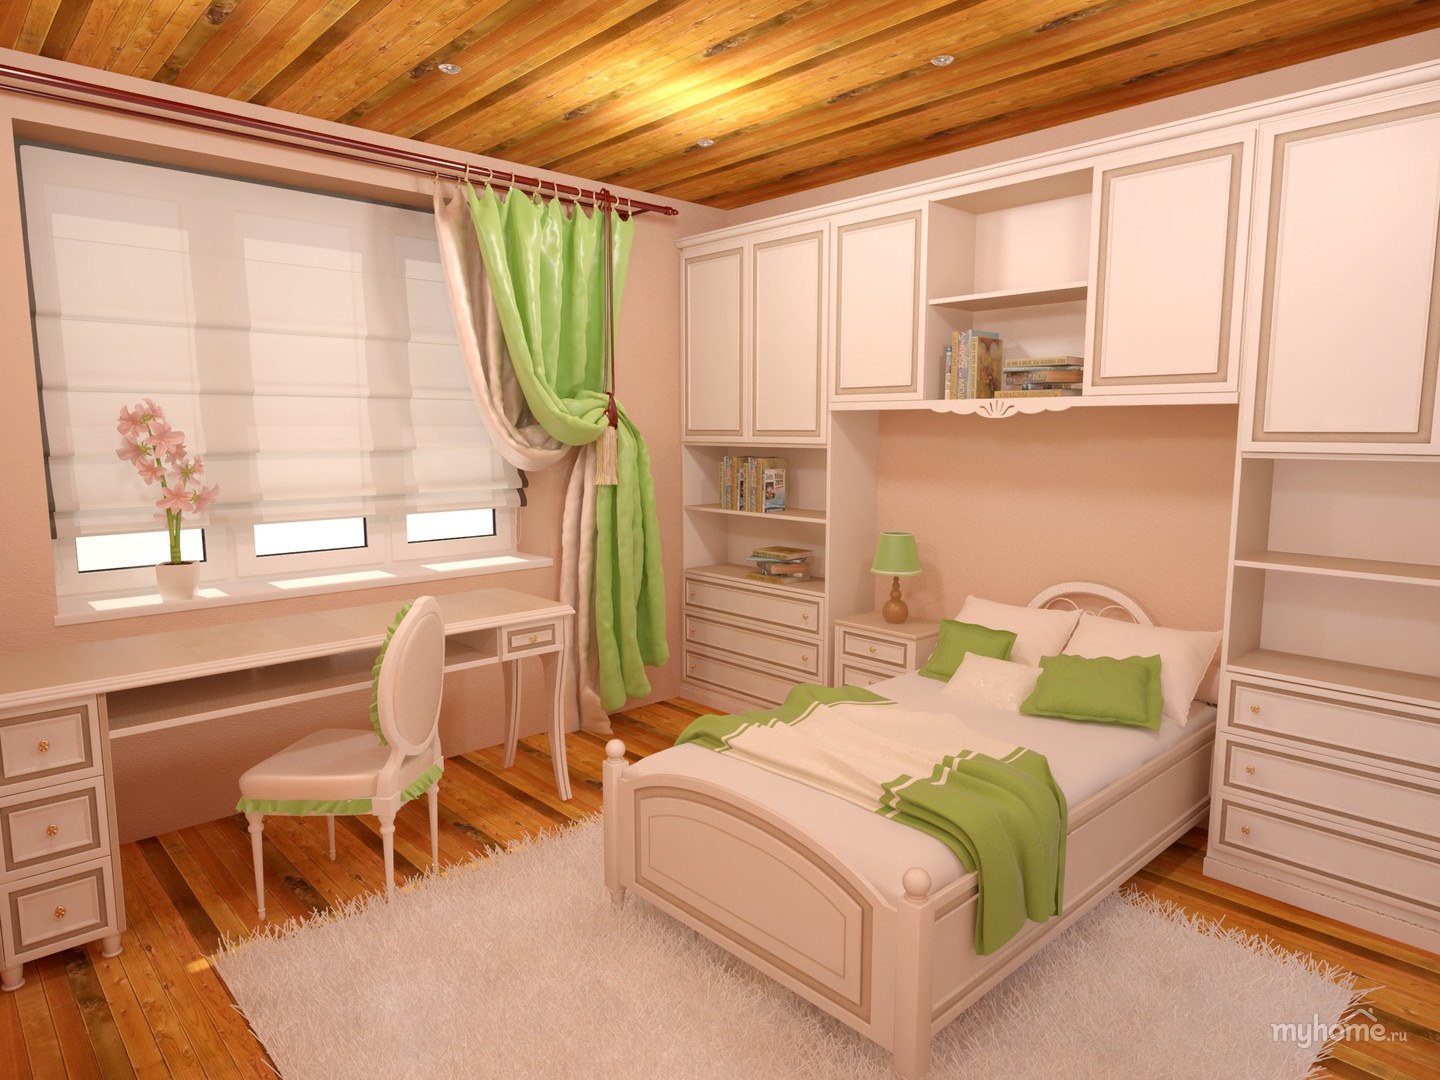 Расположение мебели в спальне детской